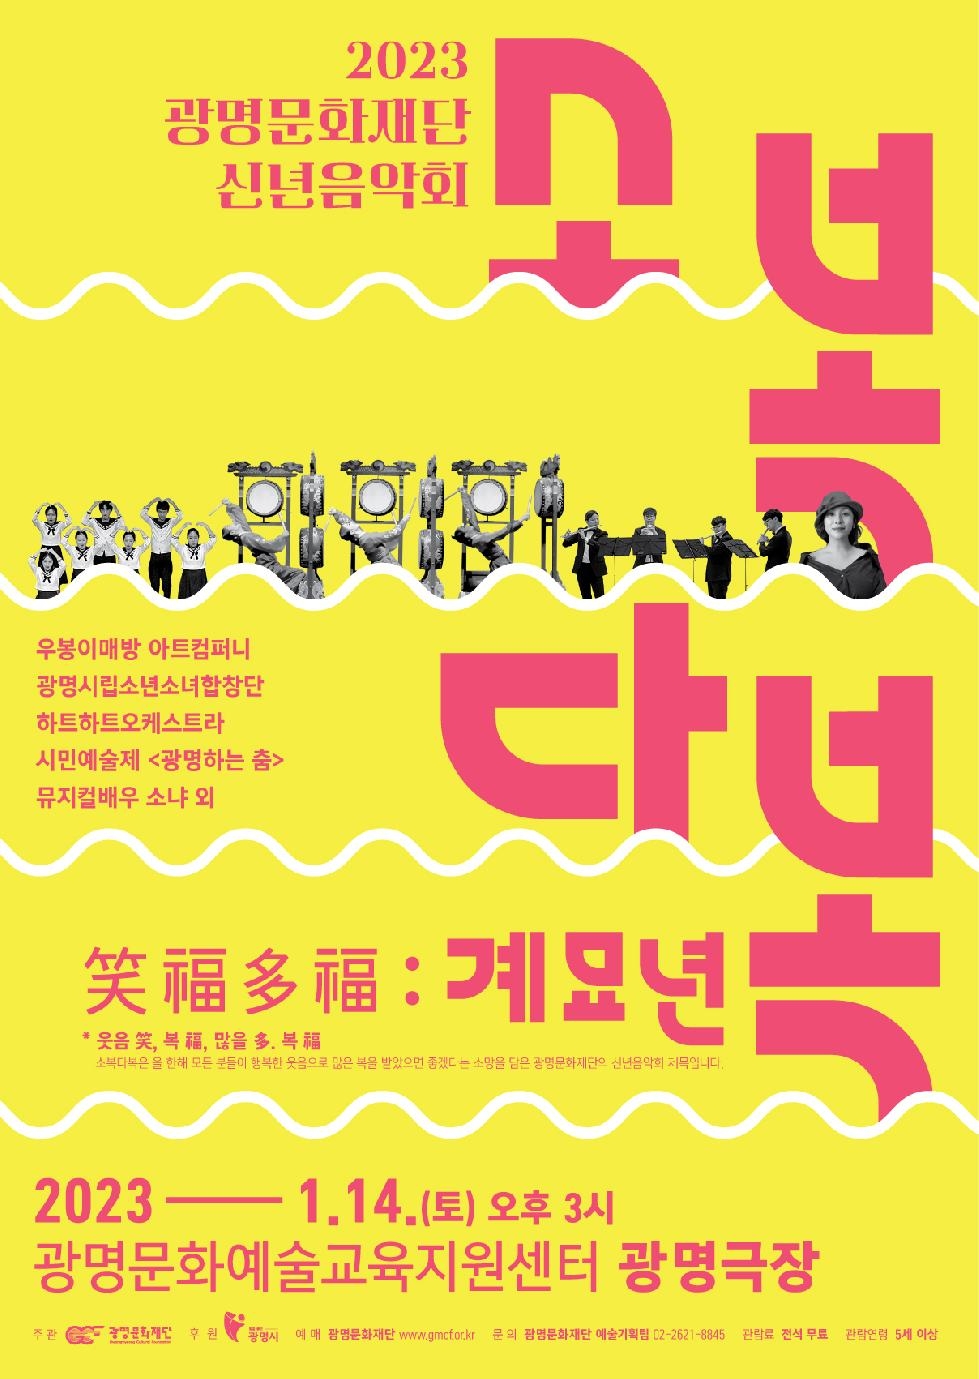 (재)광명문화재단, 2023년 신년음악회 [소복다복(笑福多福) : 계묘년] 개최